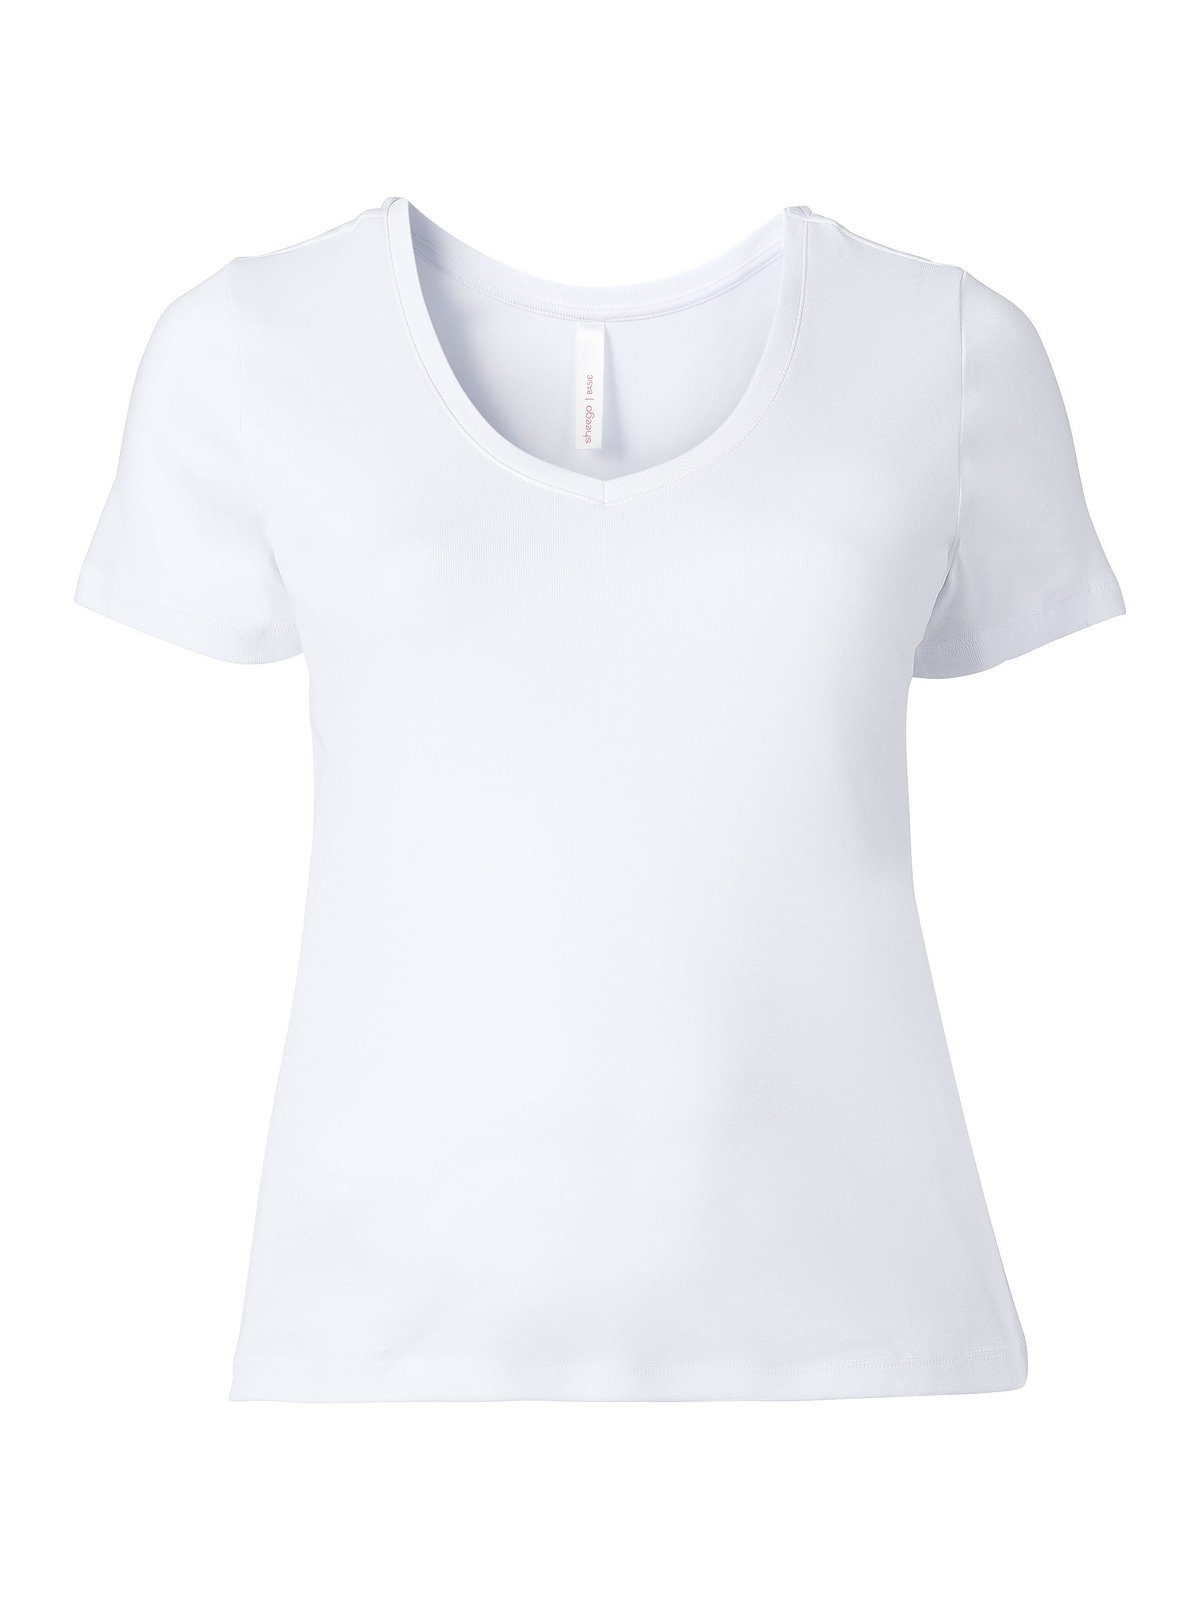 Sheego T-Shirt Große Größen gerippter fein Qualität weiß aus